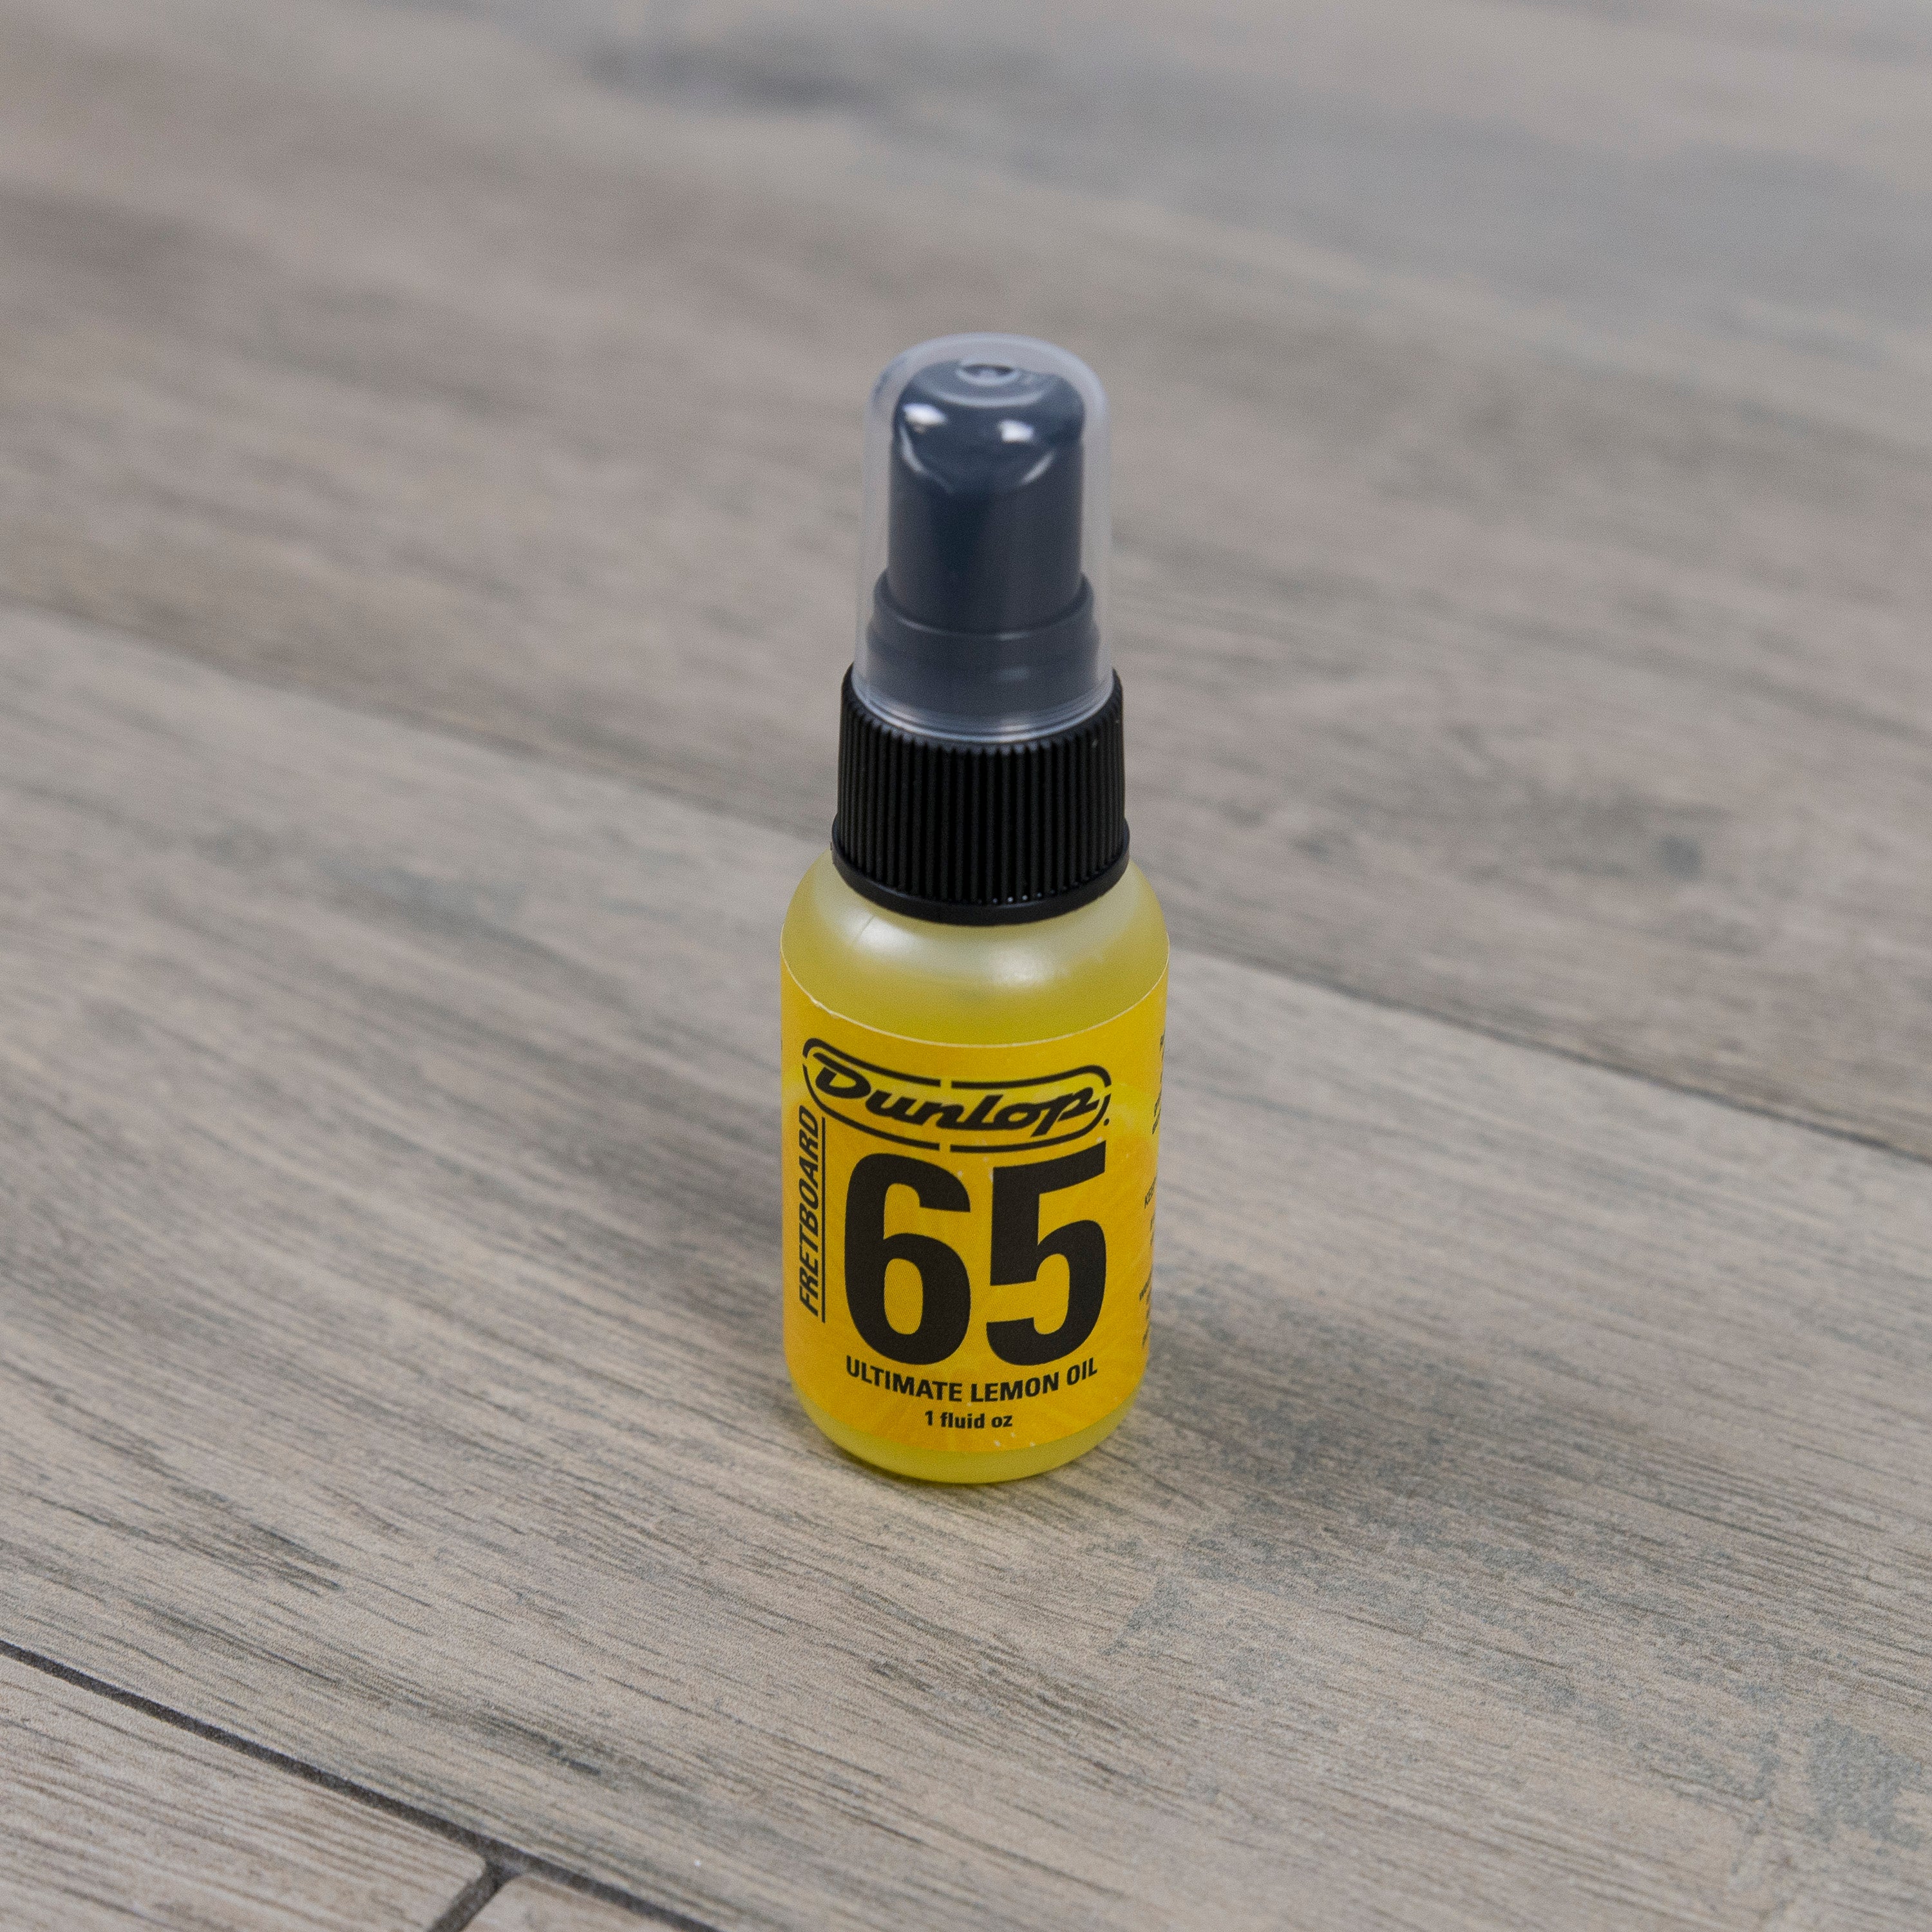 Dunlop 65 lemon oil